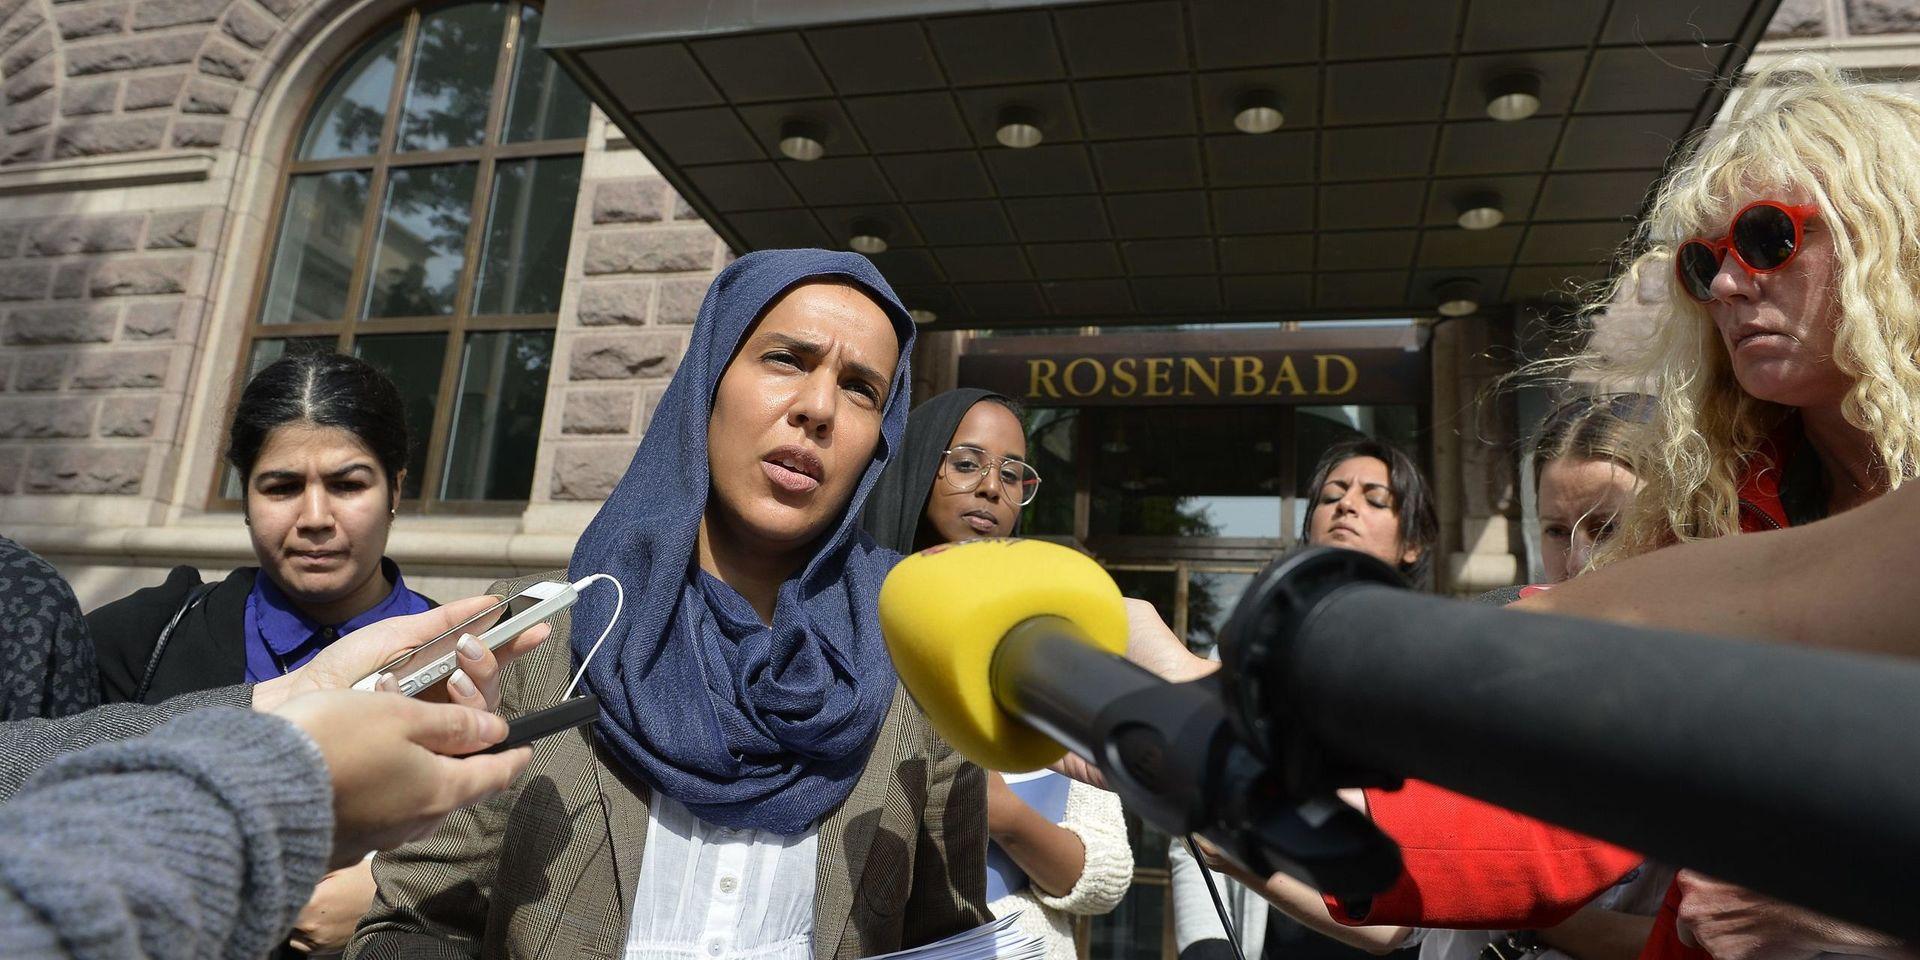 Fatima Doubakil, en av målsägandena i rättegången mot Ann-Sofie Hermansson, har länge varit aktiv i offentligheten. Här som företrädare för det så kallade Hijabuppropet 2013. 

